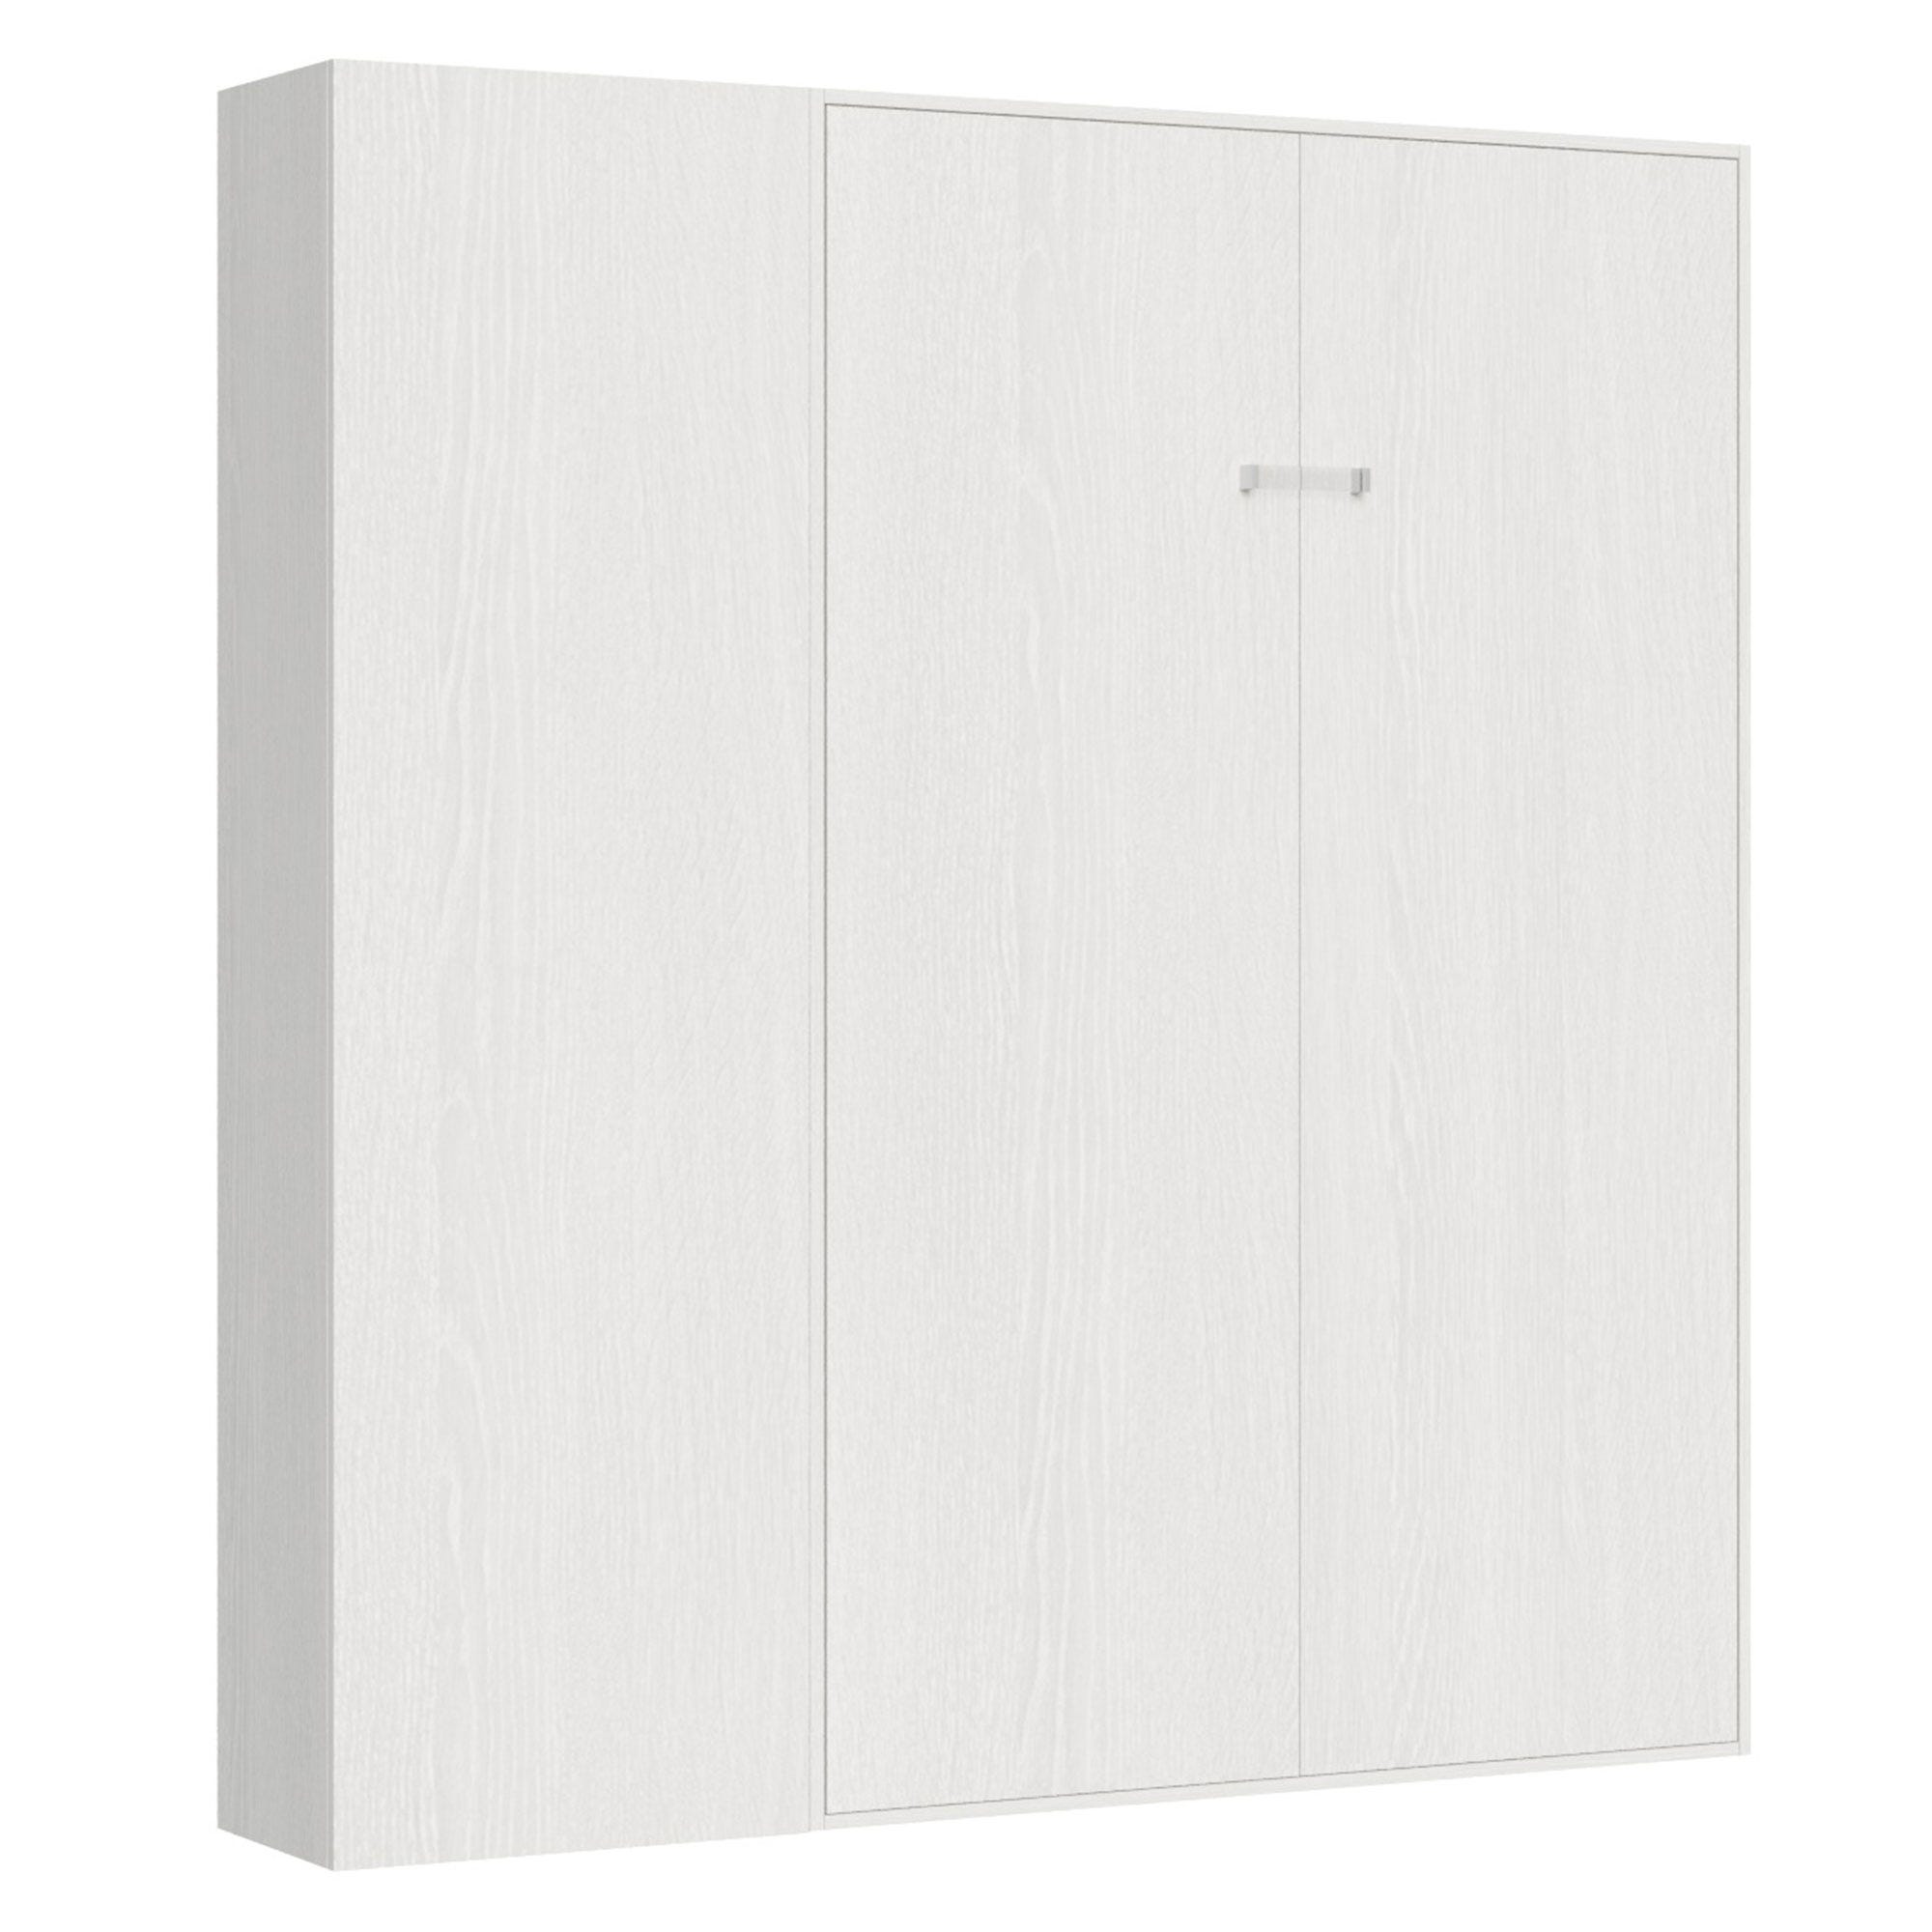 005985 - Cama abatible de 120 cm con mueble alto blanco KENTARO 